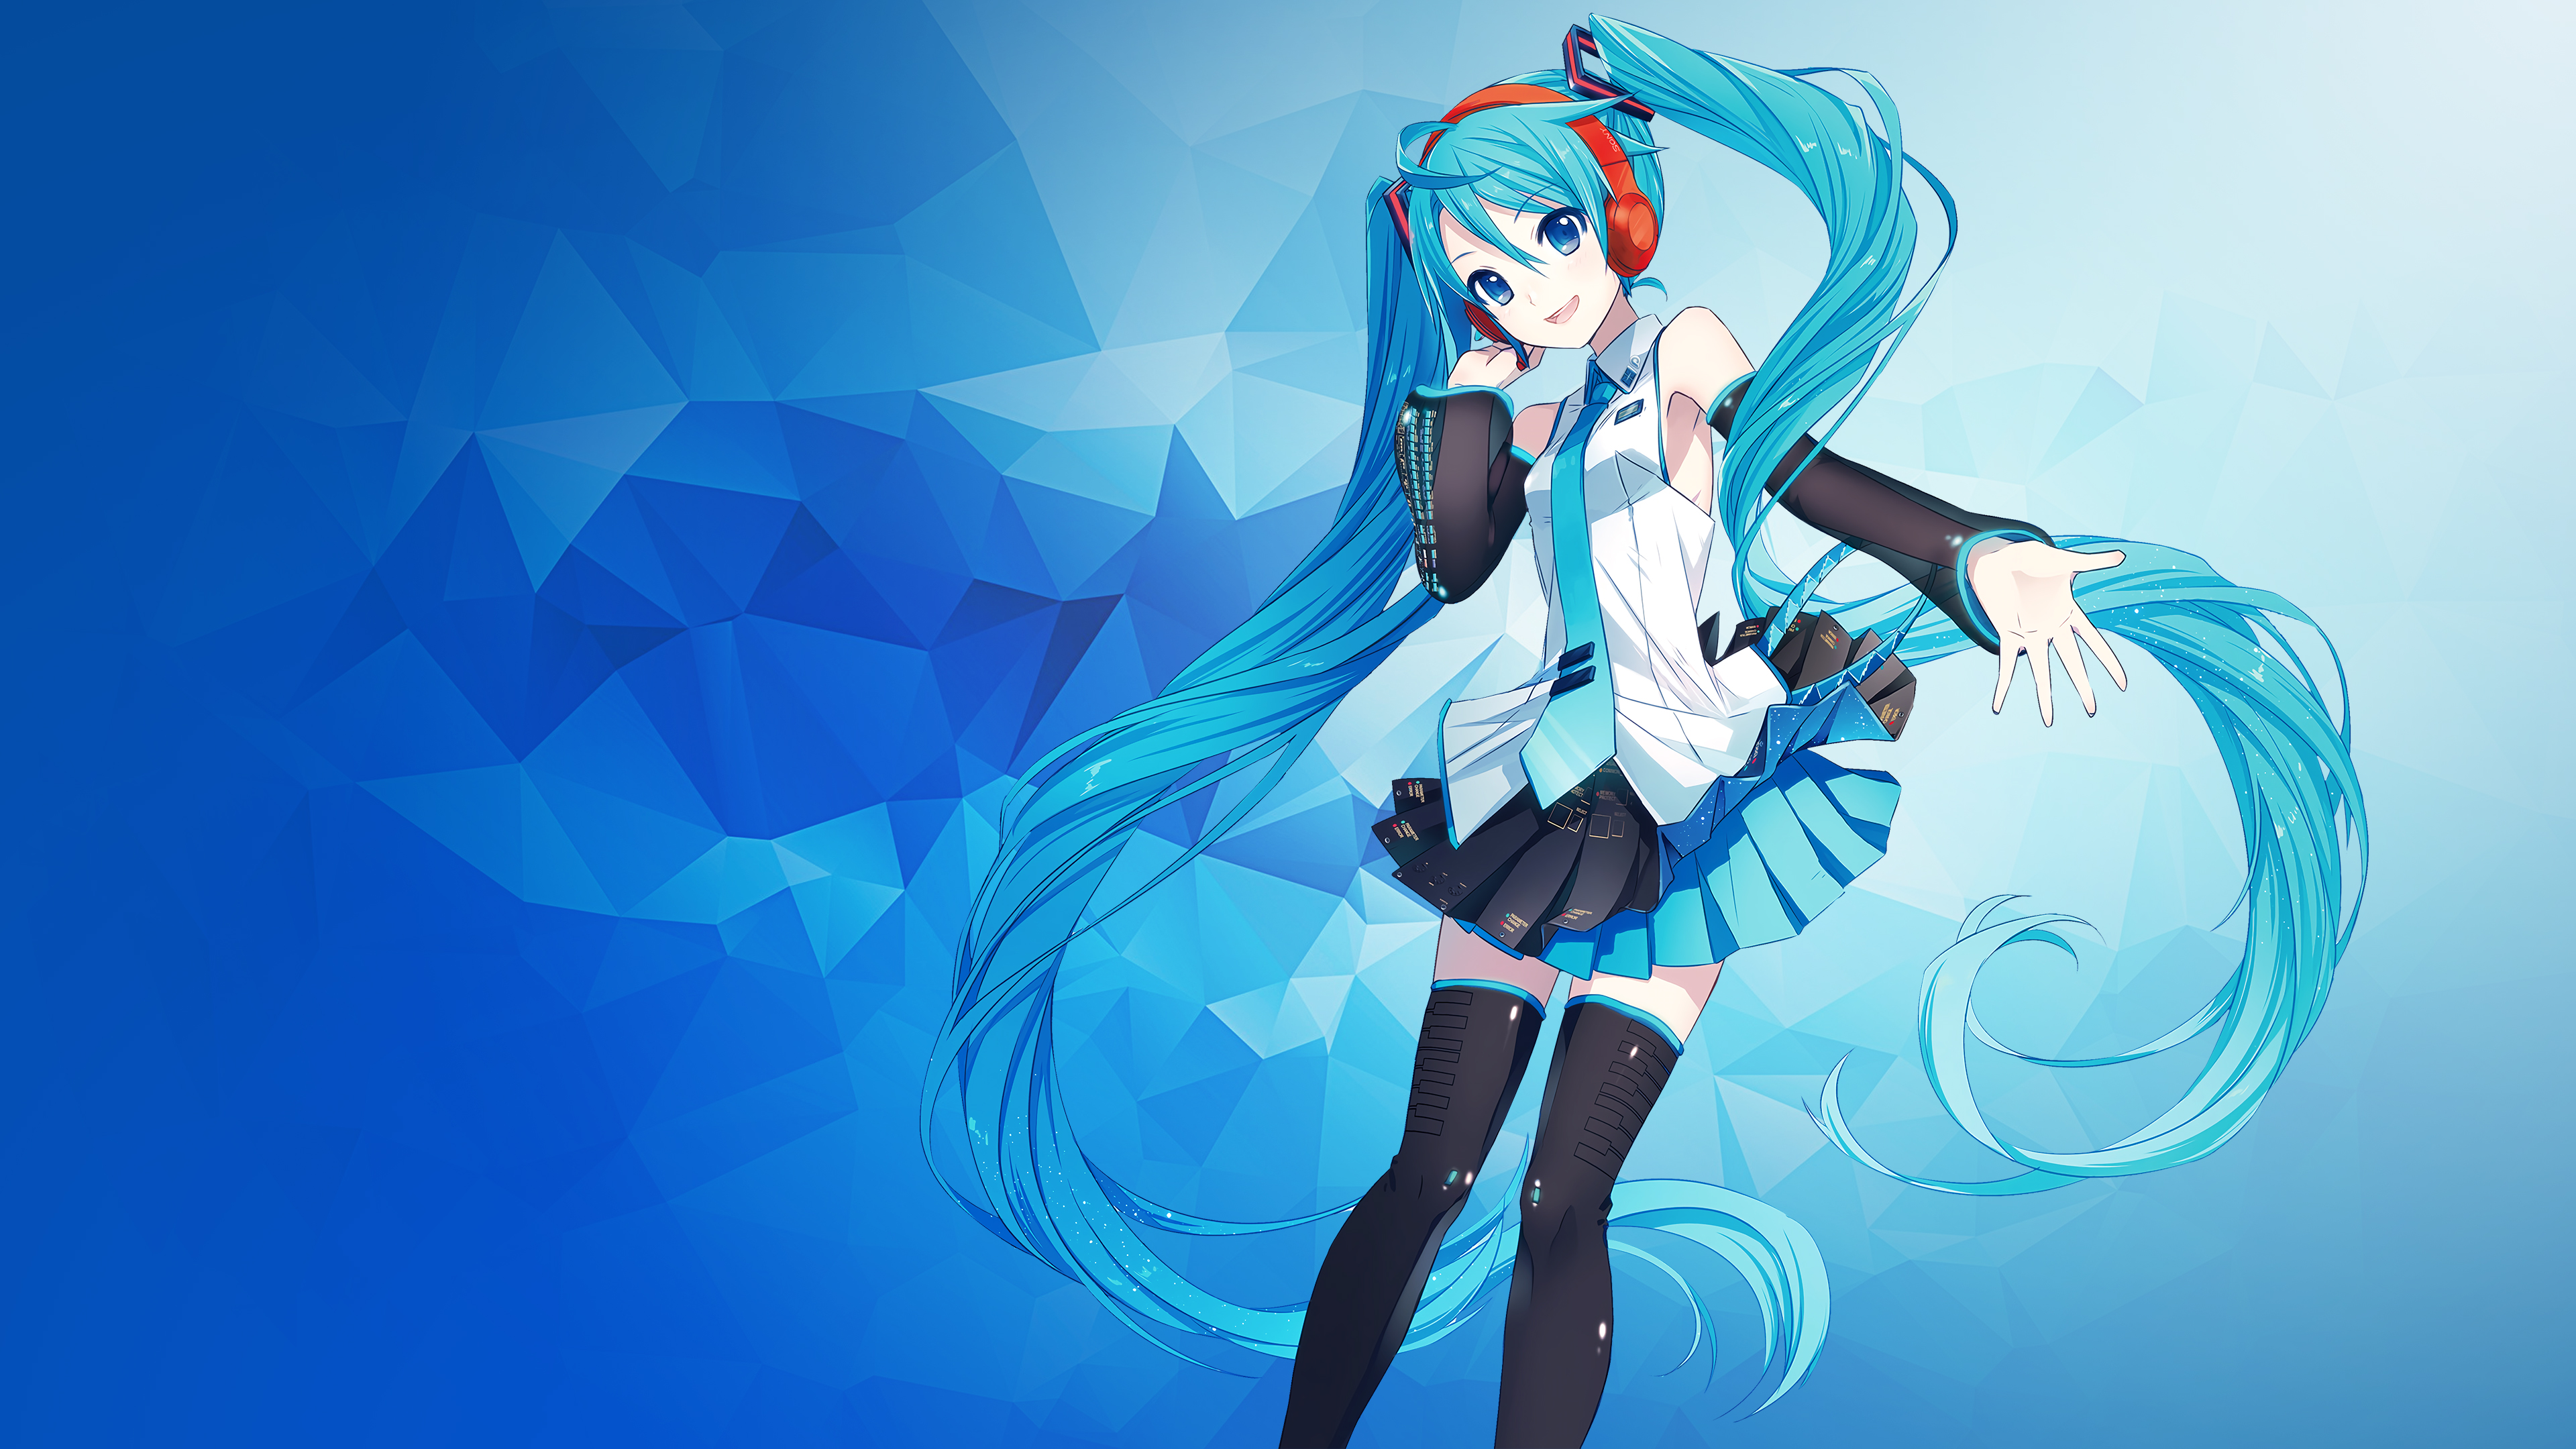 Hình nền Vocaloid 4K: Những hình ảnh đầy màu sắc và nét độc đáo của Vocaloid sẽ để lại ấn tượng mạnh với bạn khi được hiển thị trên màn hình của bạn với độ phân giải 4K. Hãy tưởng tượng vẻ đẹp và trải nghiệm nó ngay bây giờ.